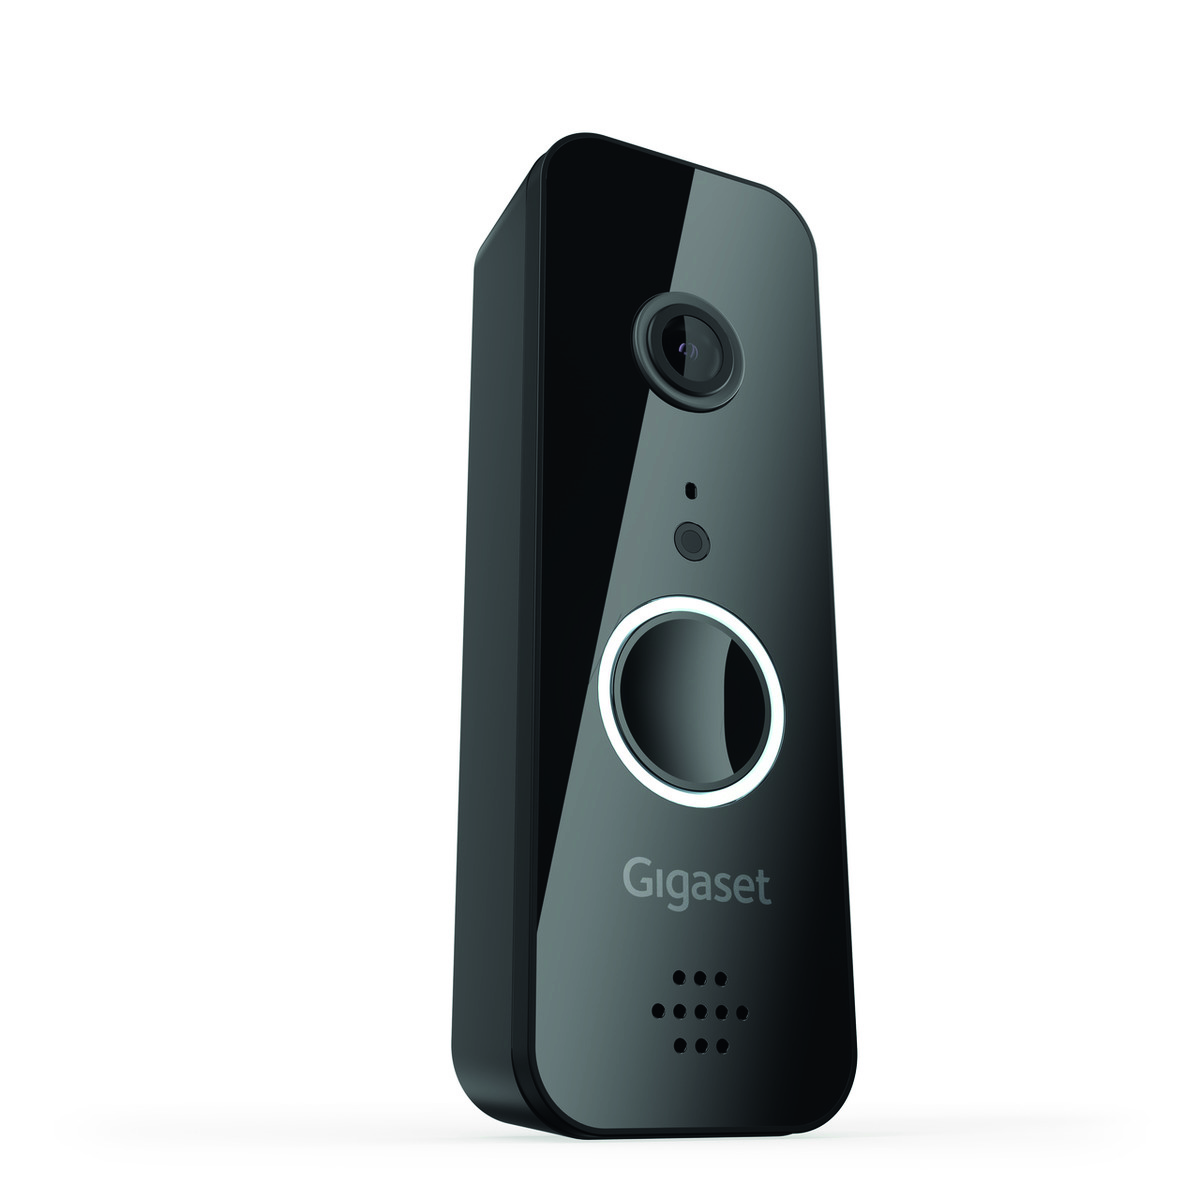 Vernetzte Video-Türklingel mit Gegensprechfunktion für Gigaset Smart Home Alarmsysteme.